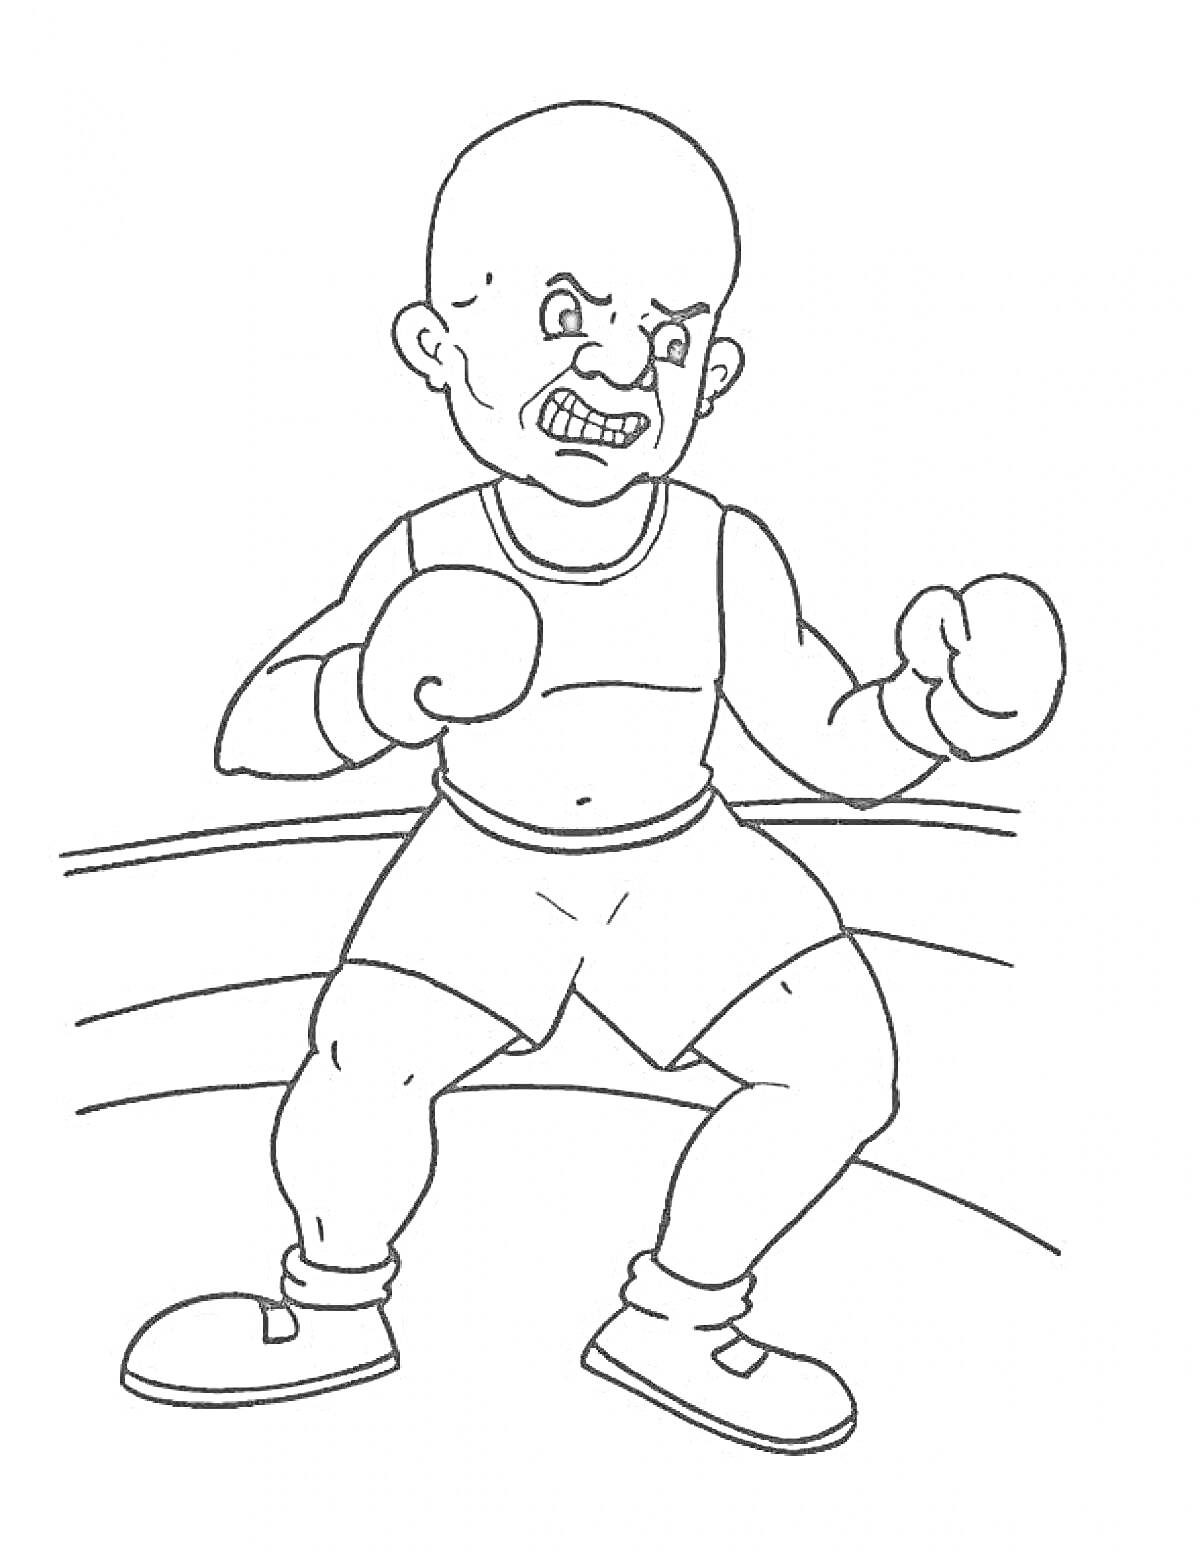 Раскраска Боксер в боевой стойке на ринге